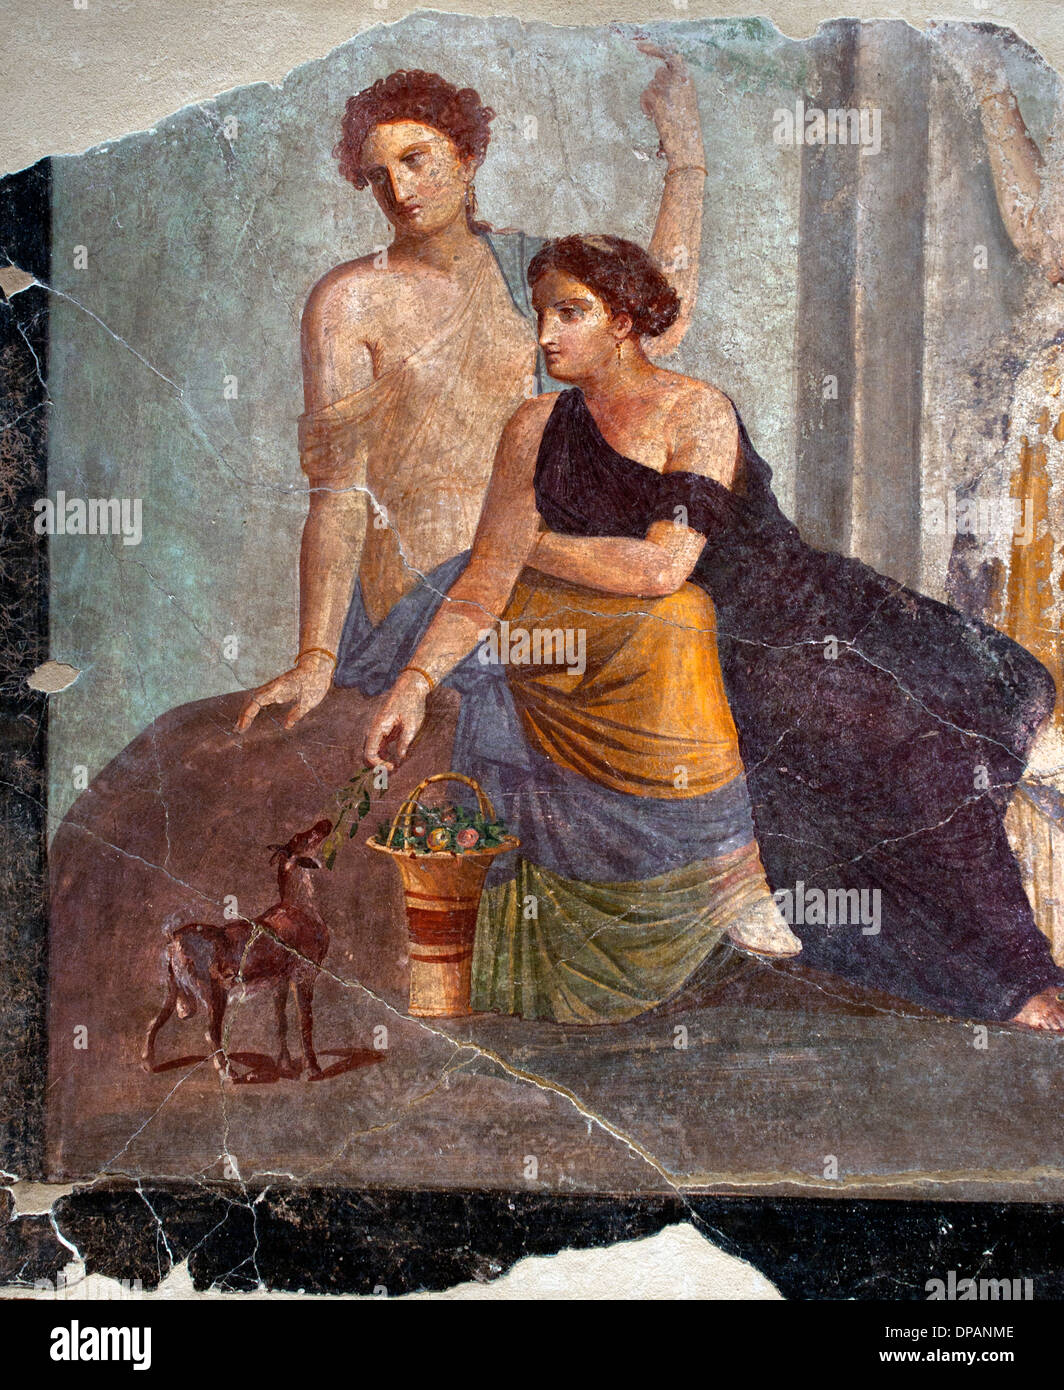 Fresco 30-50 AD AD Pompeya fragmento mujer junto a un cervatillo báquica escena culto Italia Romana Foto de stock